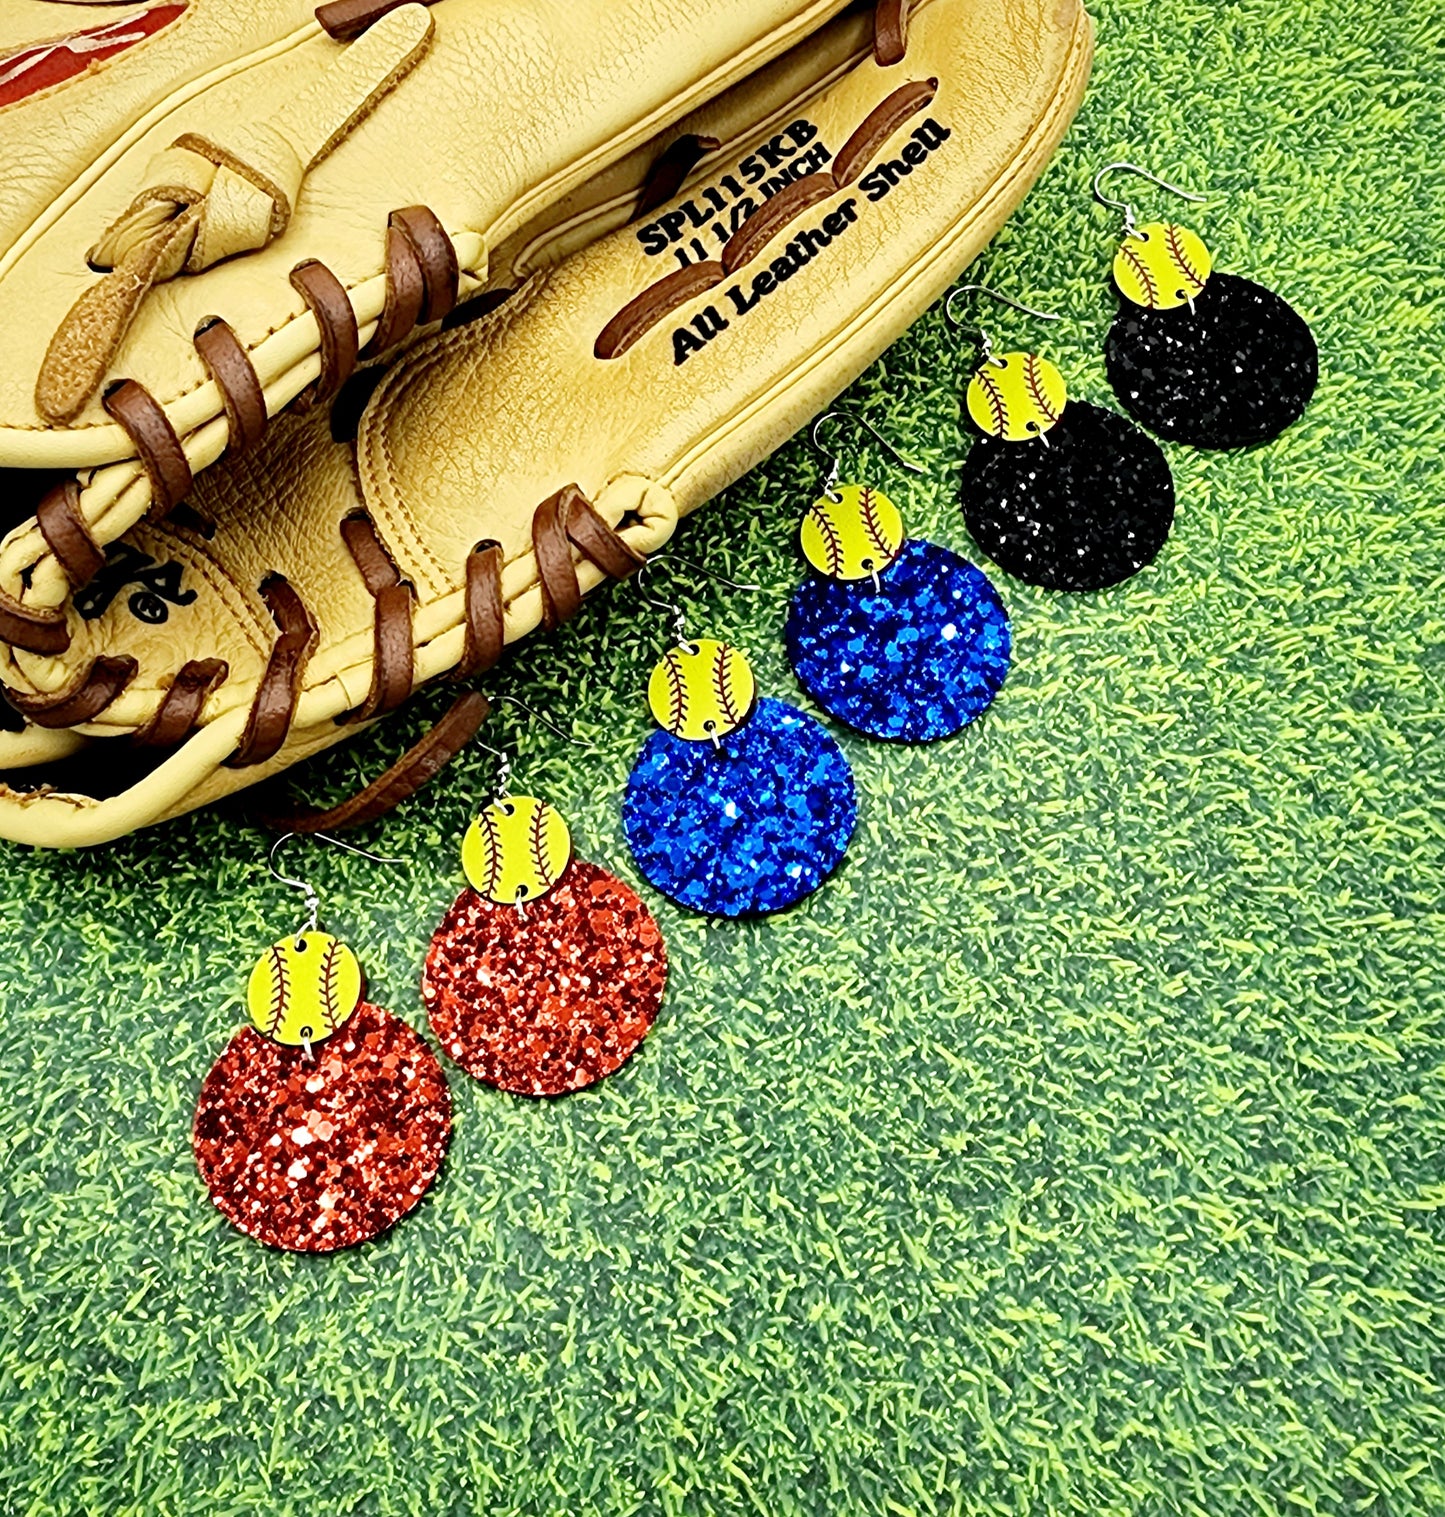 PREORDER Glitter Baseball Jordan Earrings